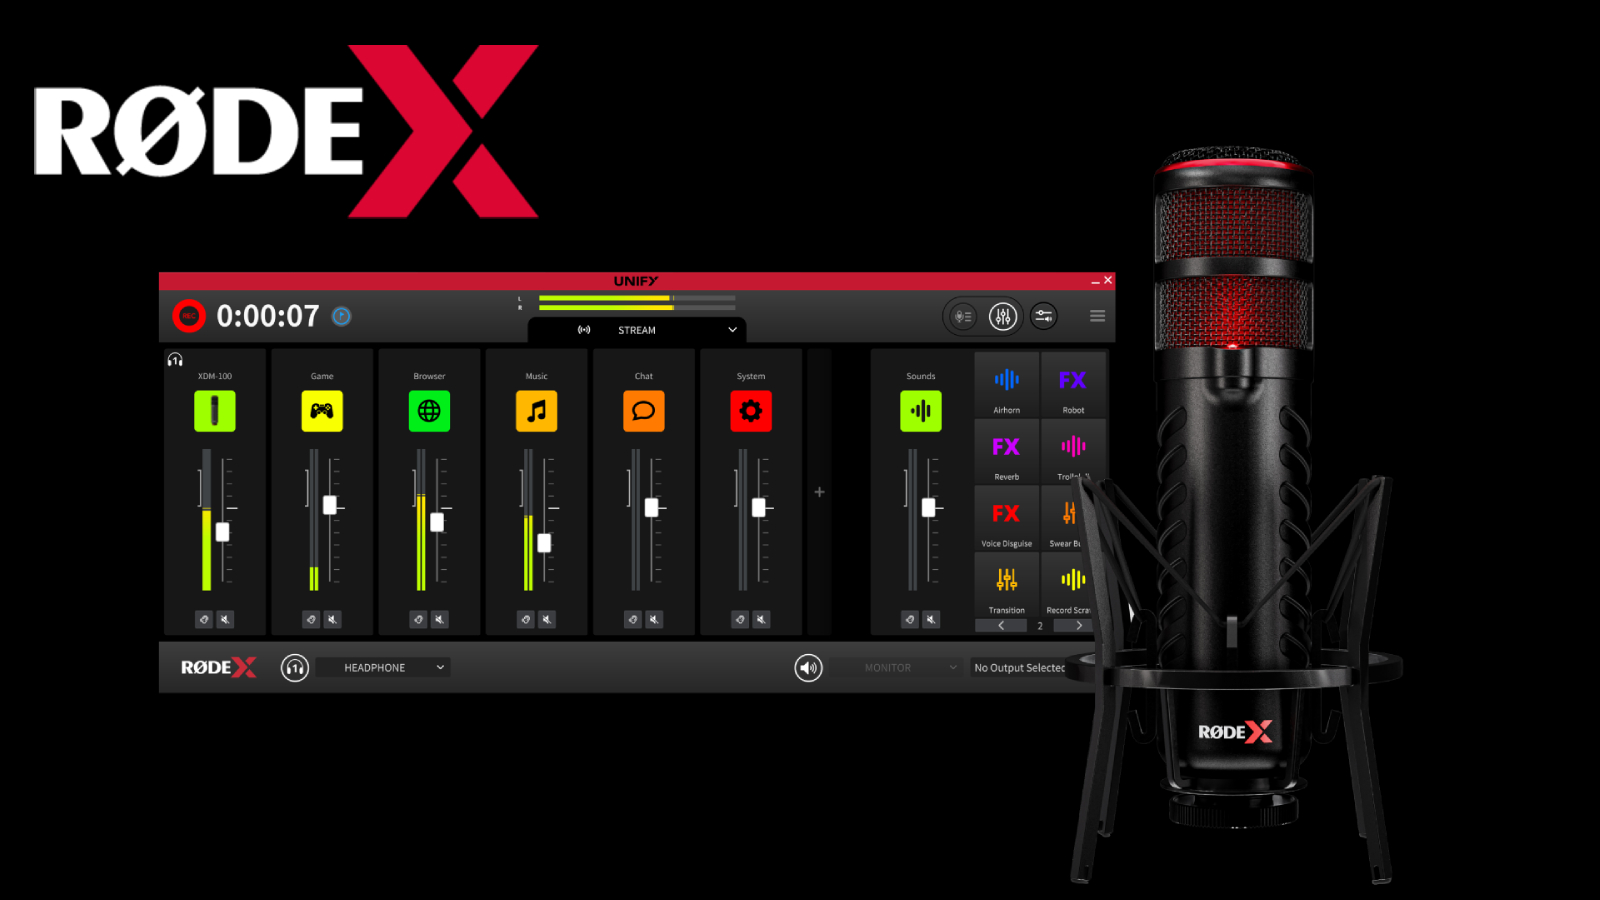 Rode X révélé : l'expertise audio pro vient aux joueurs et aux streamers